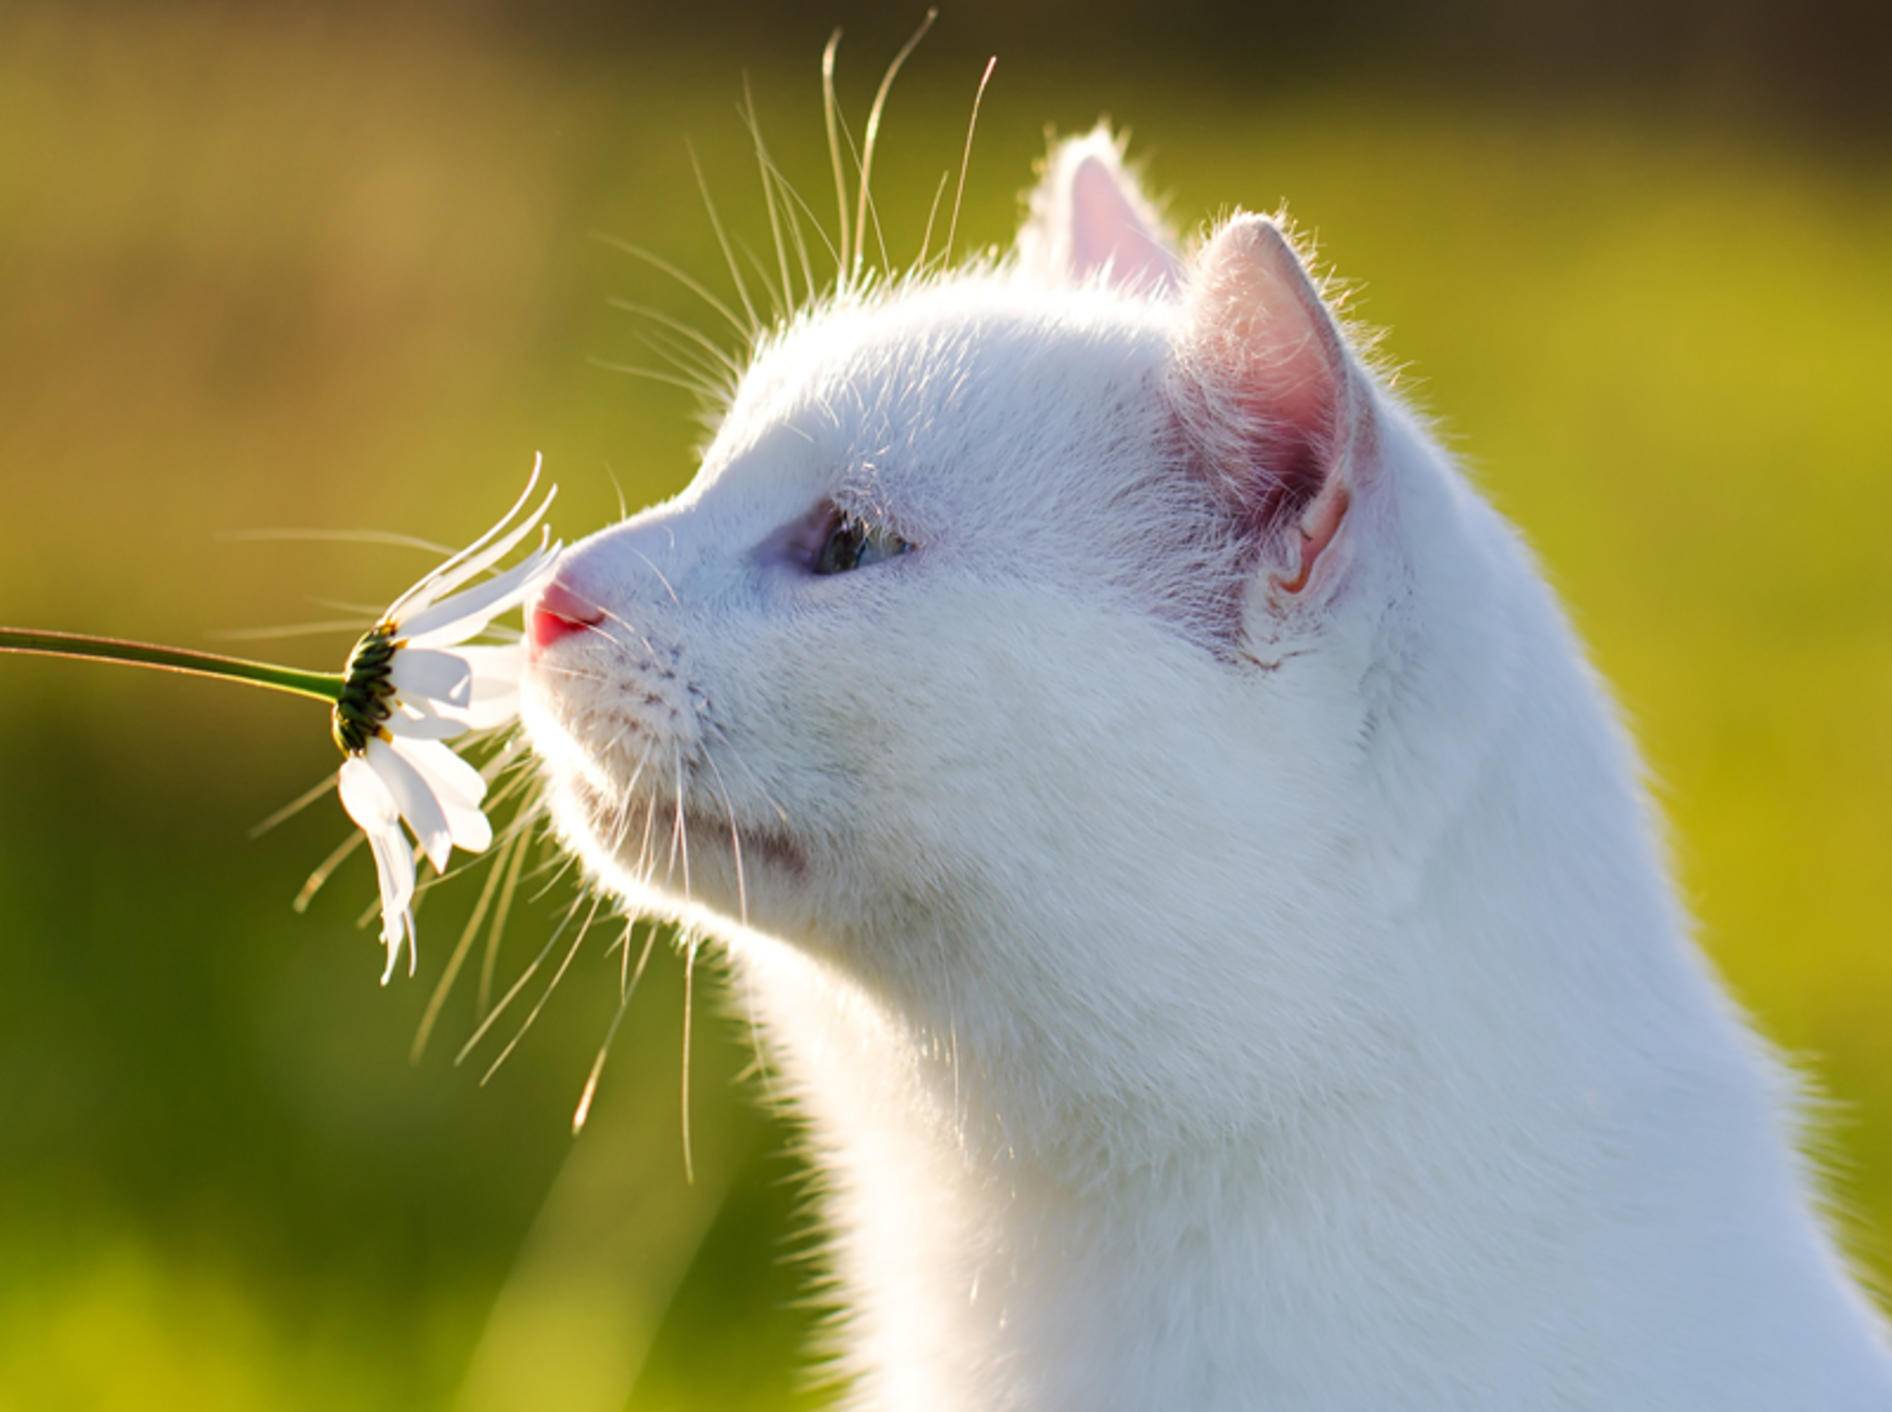 Katzen mögen Pflanzen - doch Vorsicht bei giftigen Gewächsen - Bild: Shutterstock / DragoNika